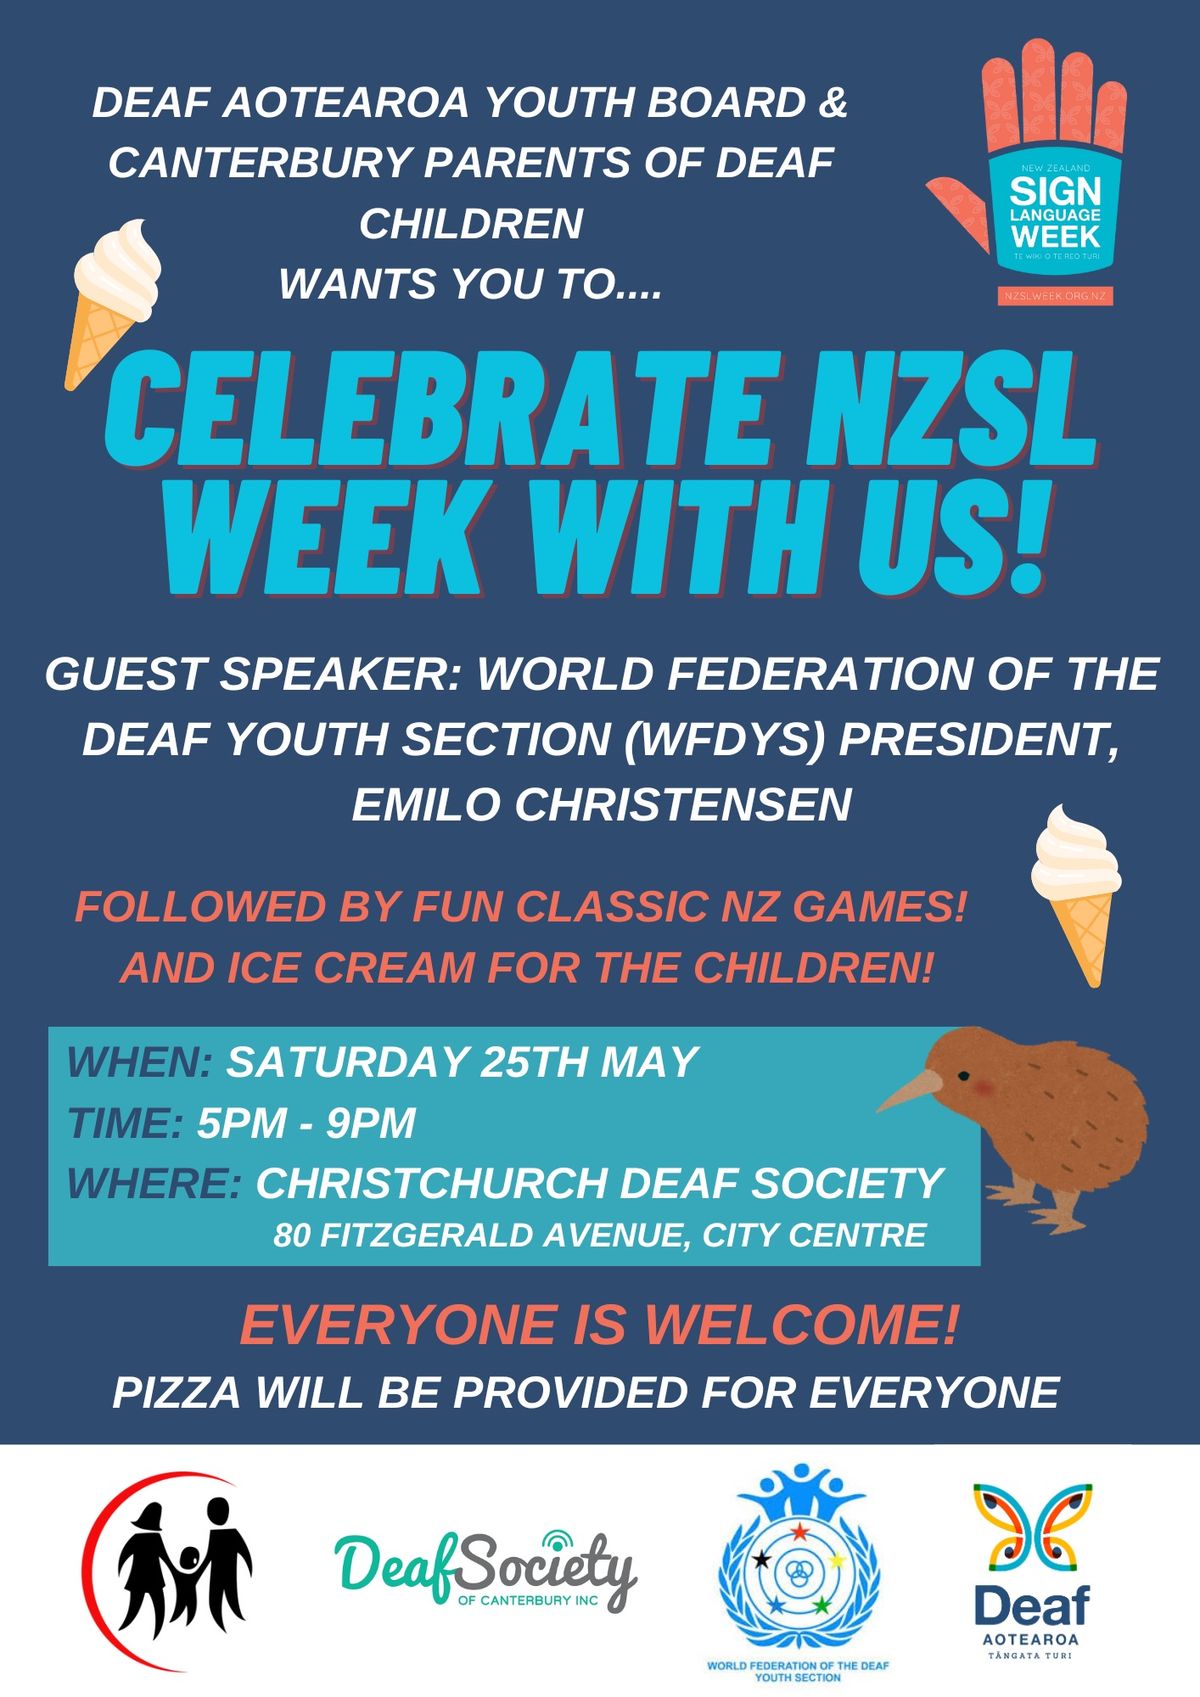 NZSL Week Event - Christchurch 